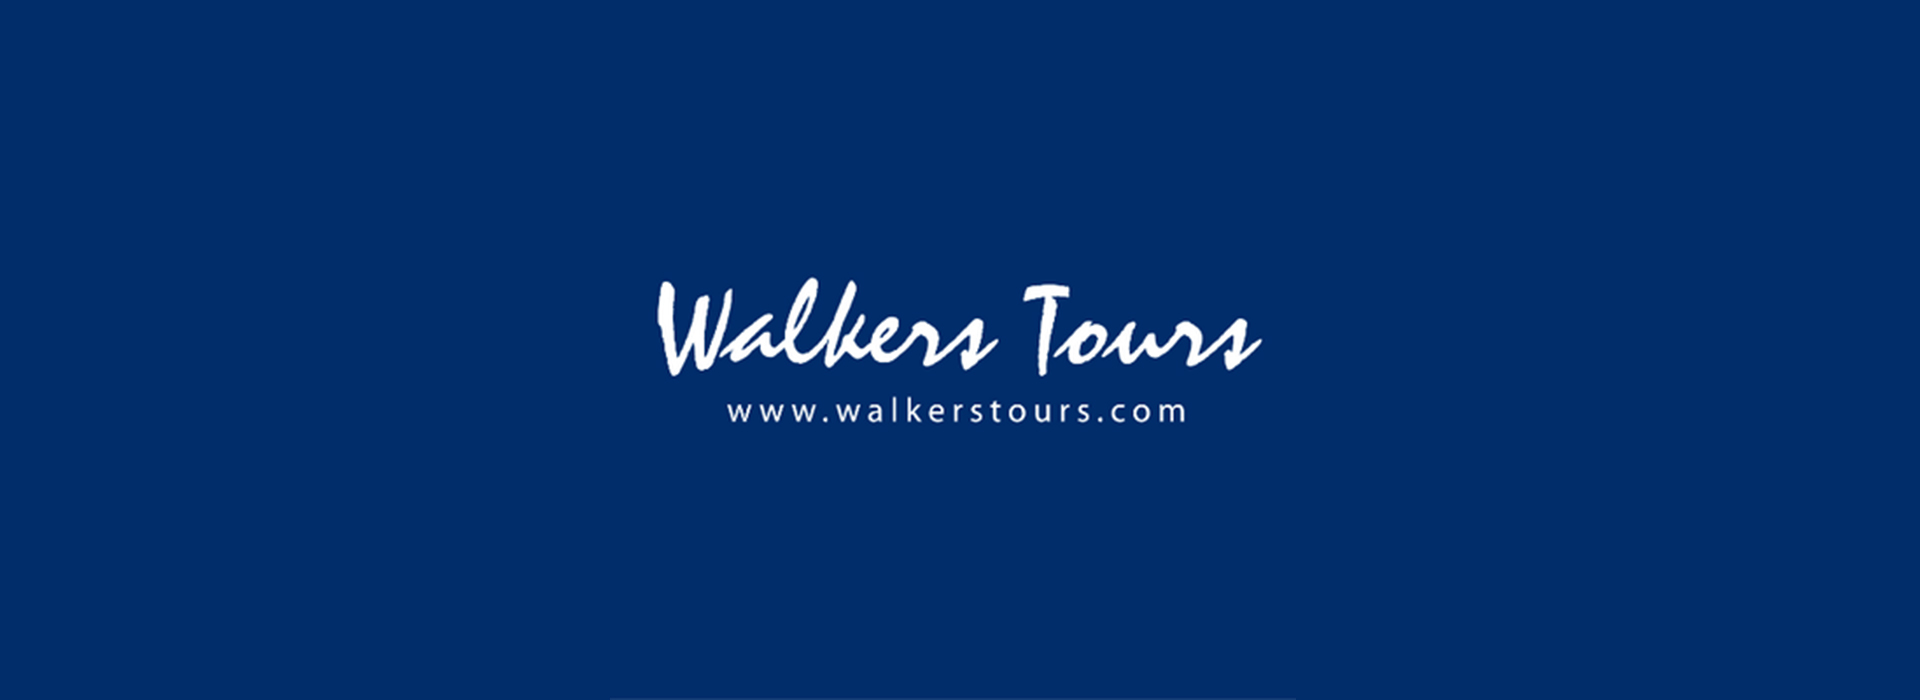 Tours & Trails